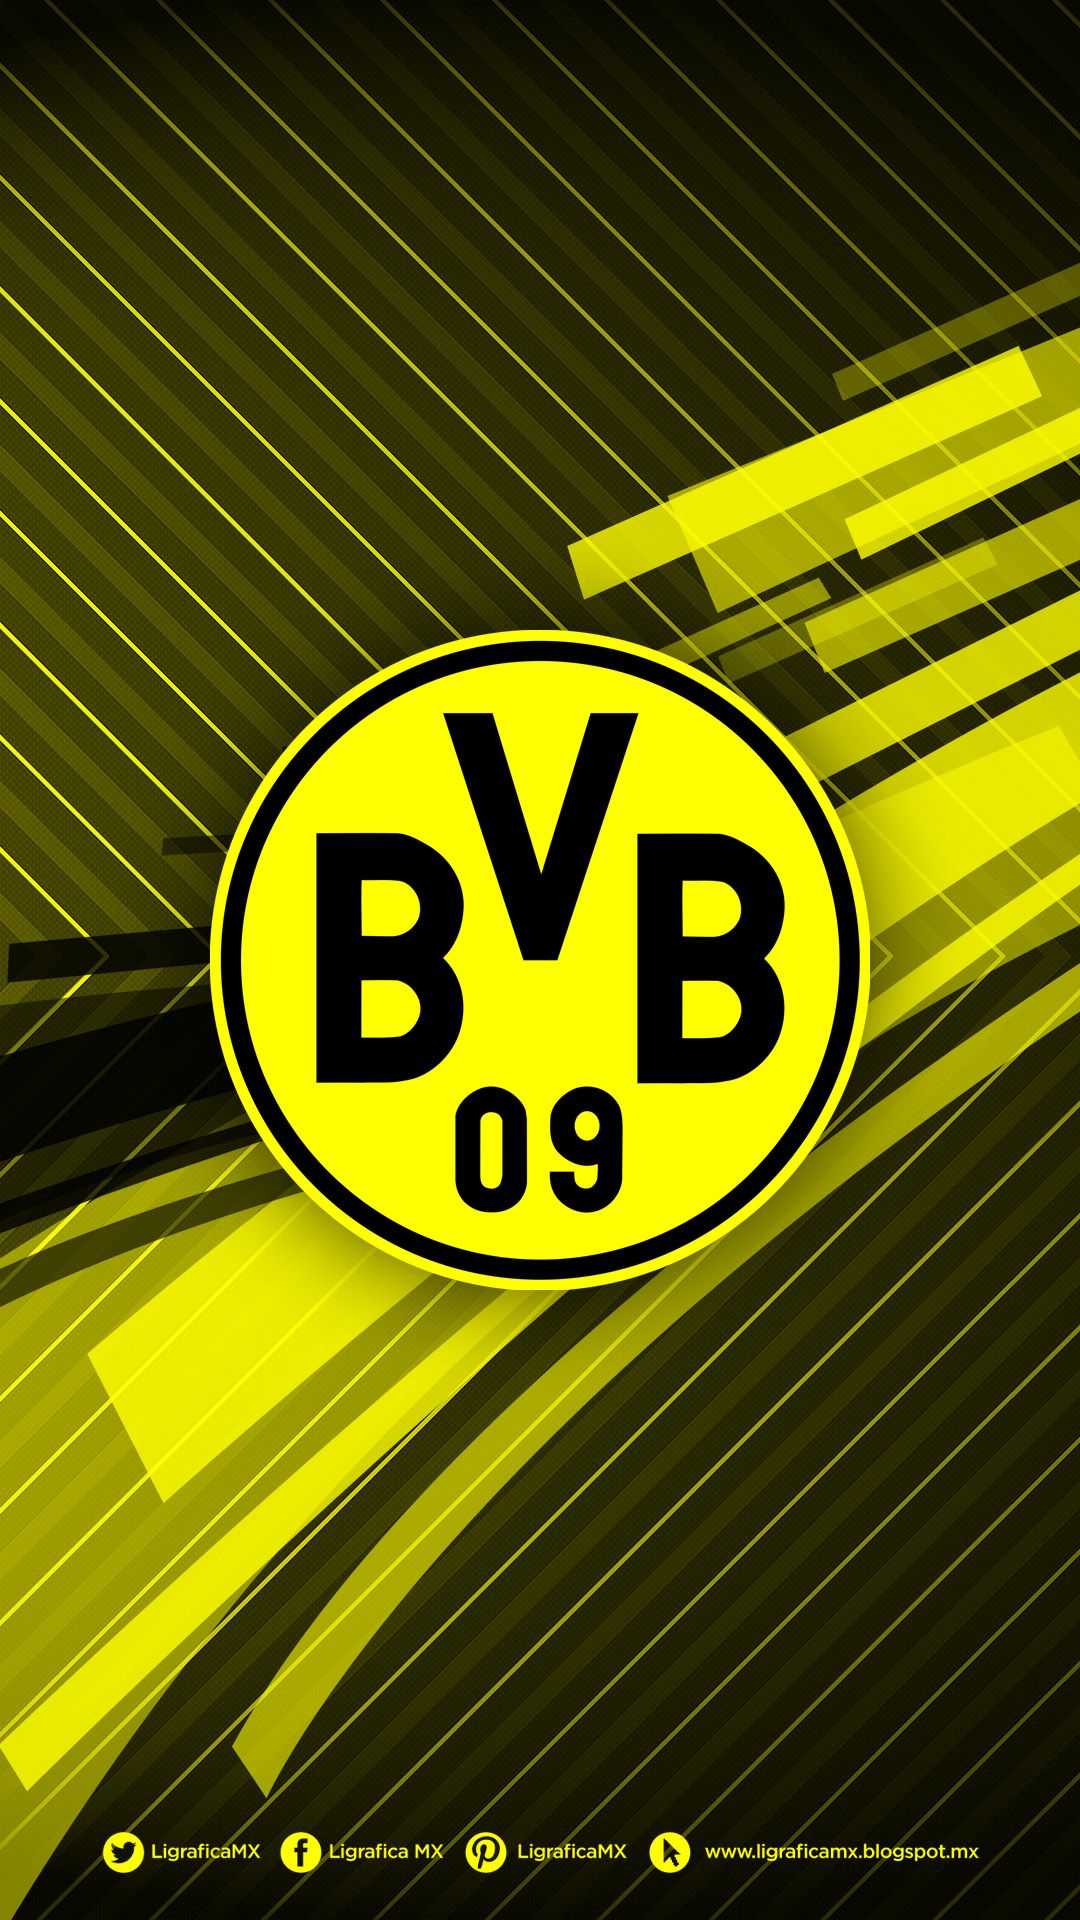 BVB • LigraficaMX 160214CTG(1). Football wallpaper, Football team logos, Borussia dortmund wallpaper